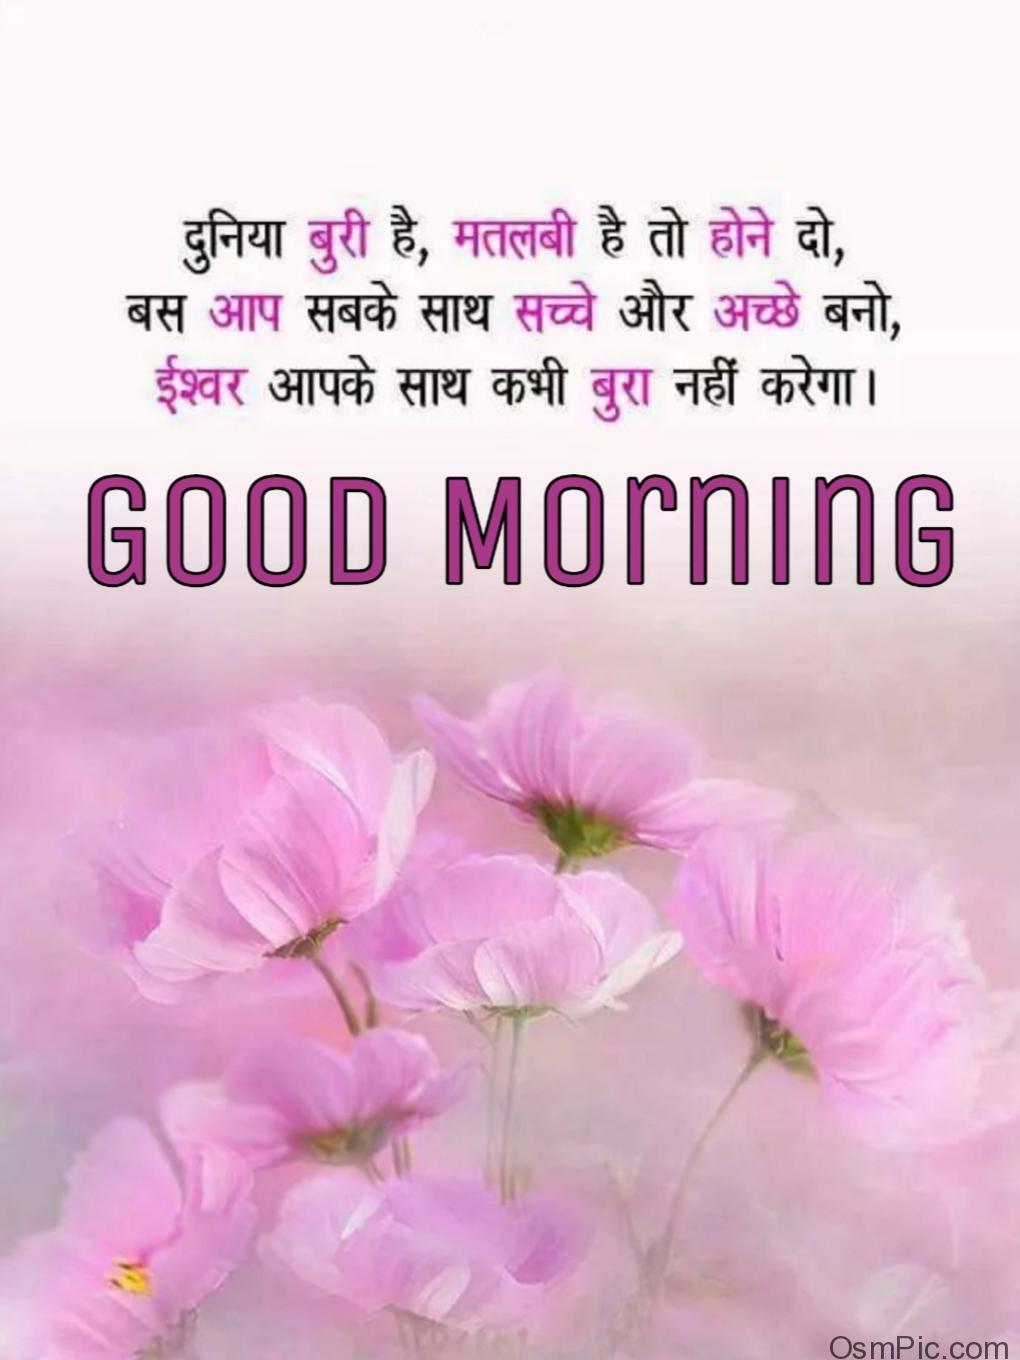 New Good Morning Hindi Images, Quotes, Shayari Pictures, Hd Photos